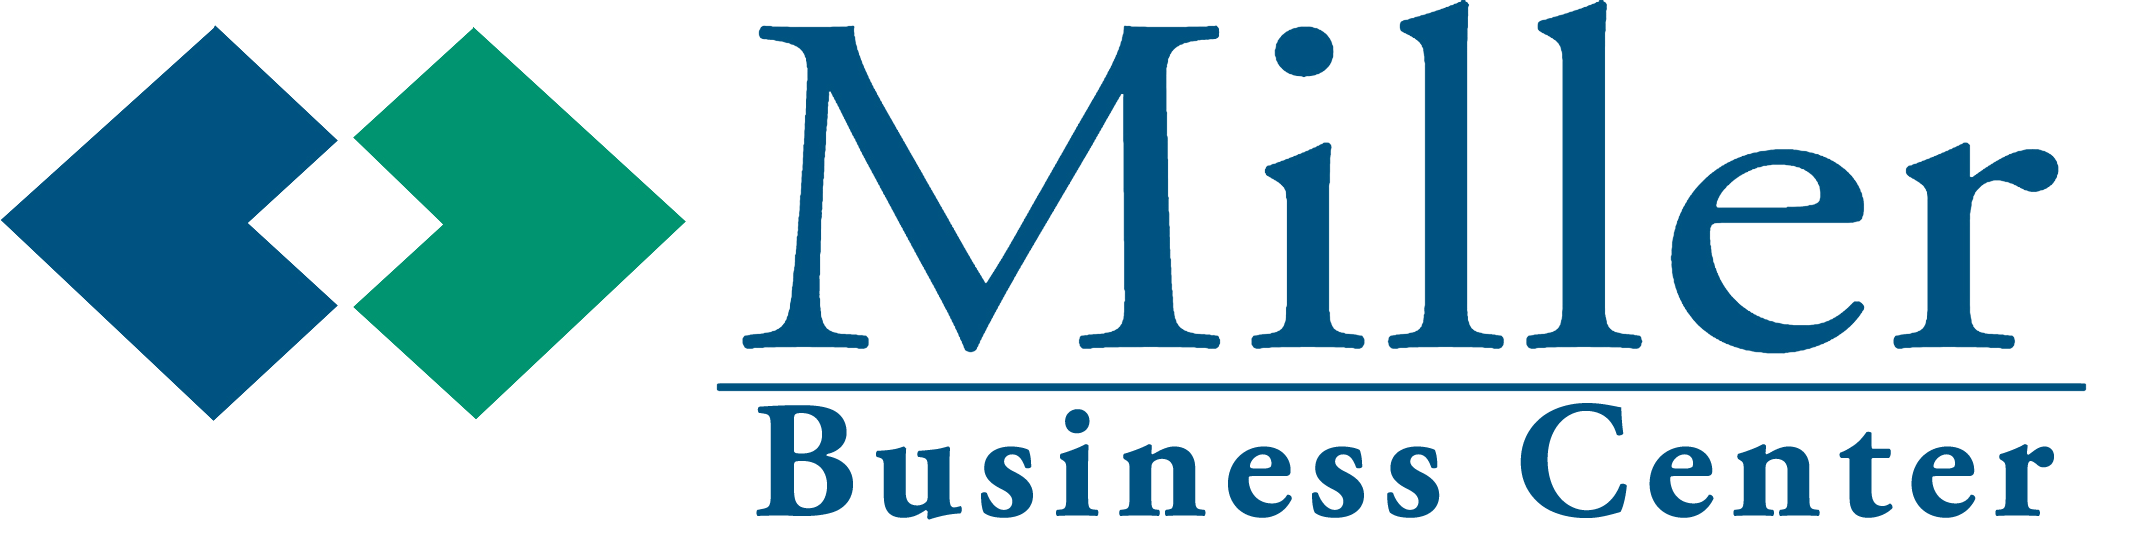 Miller Business Center